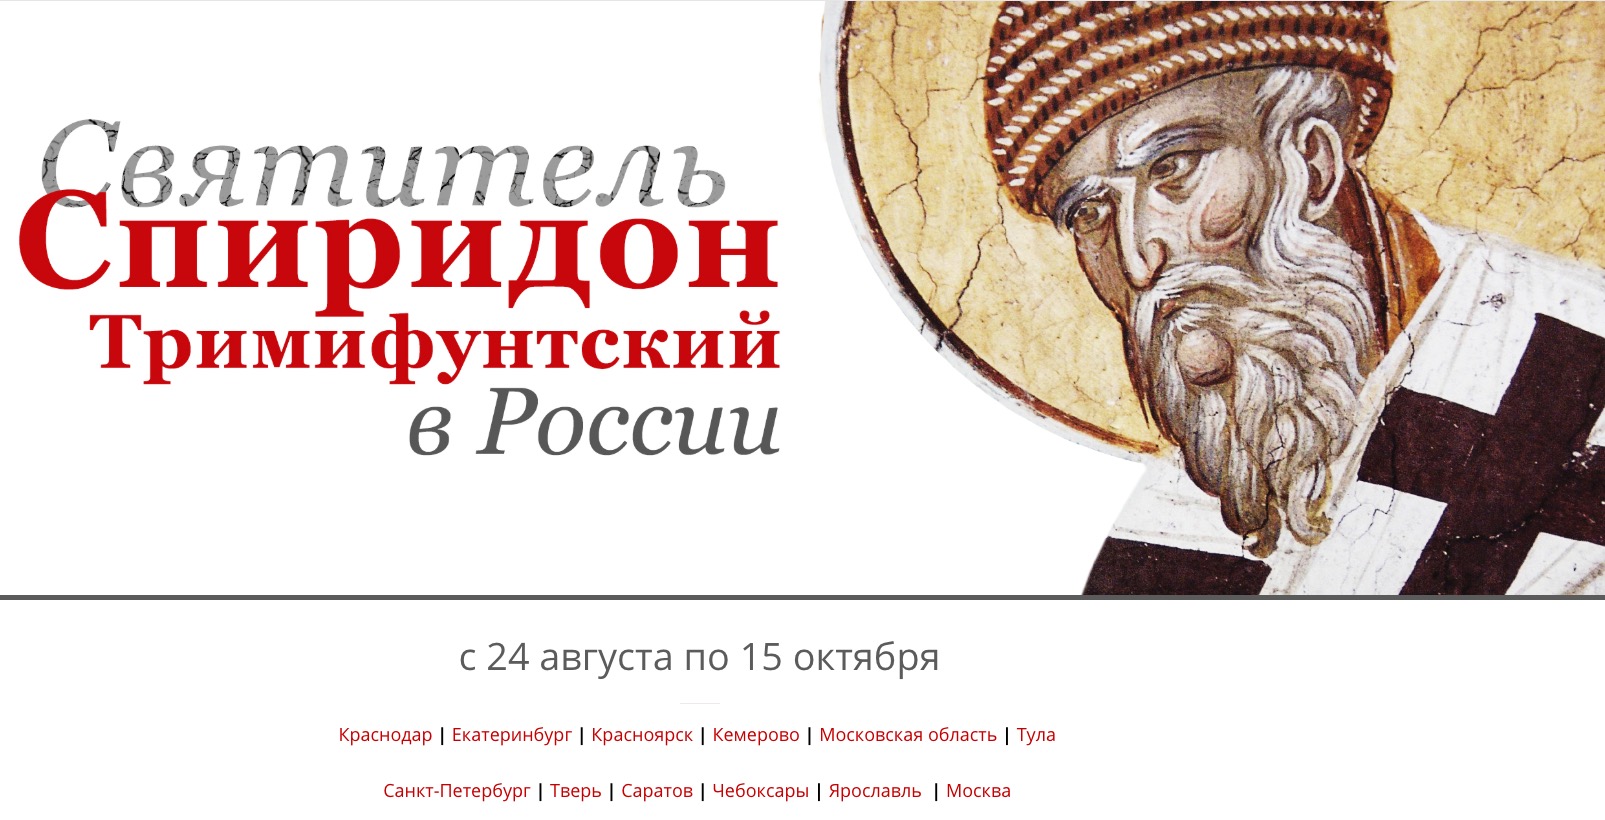 Un site internet a été ouvert, dédié à la venue des reliques de St Spyridon en Russie